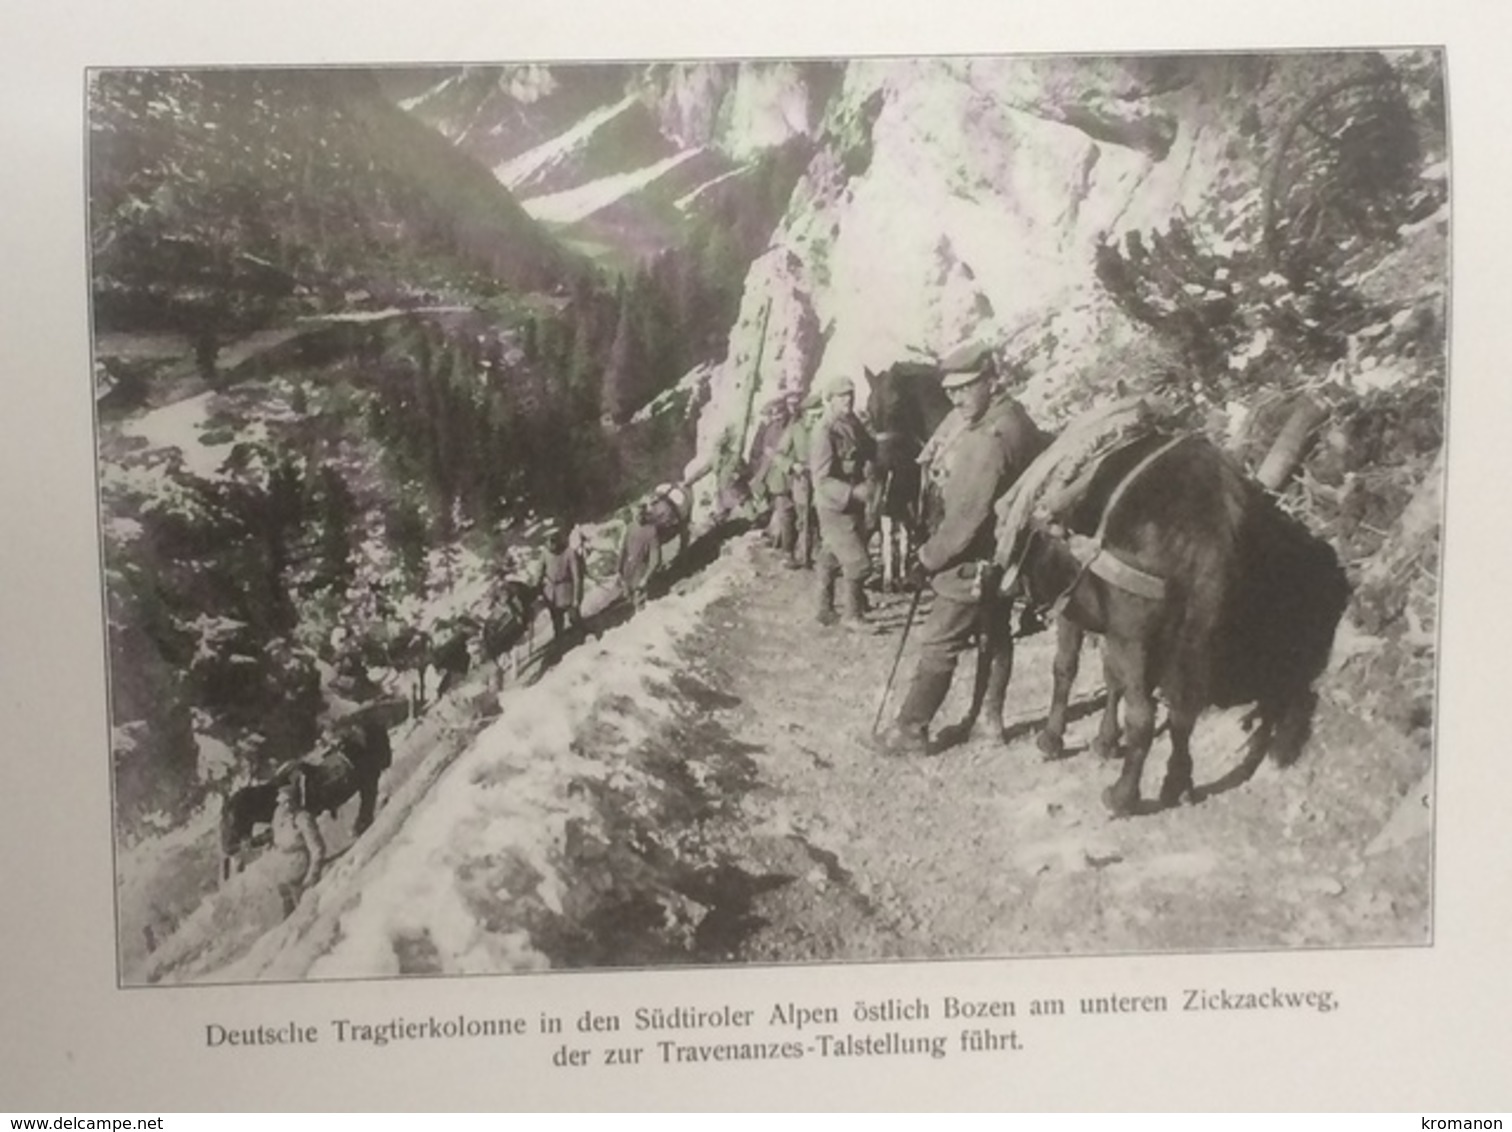 Photos Allemandes Recto Verso -  477 Colonne Allemande Zickzackweg Travenanzes - Talsyellung - Gletscherhöhen Marmolata - Optique